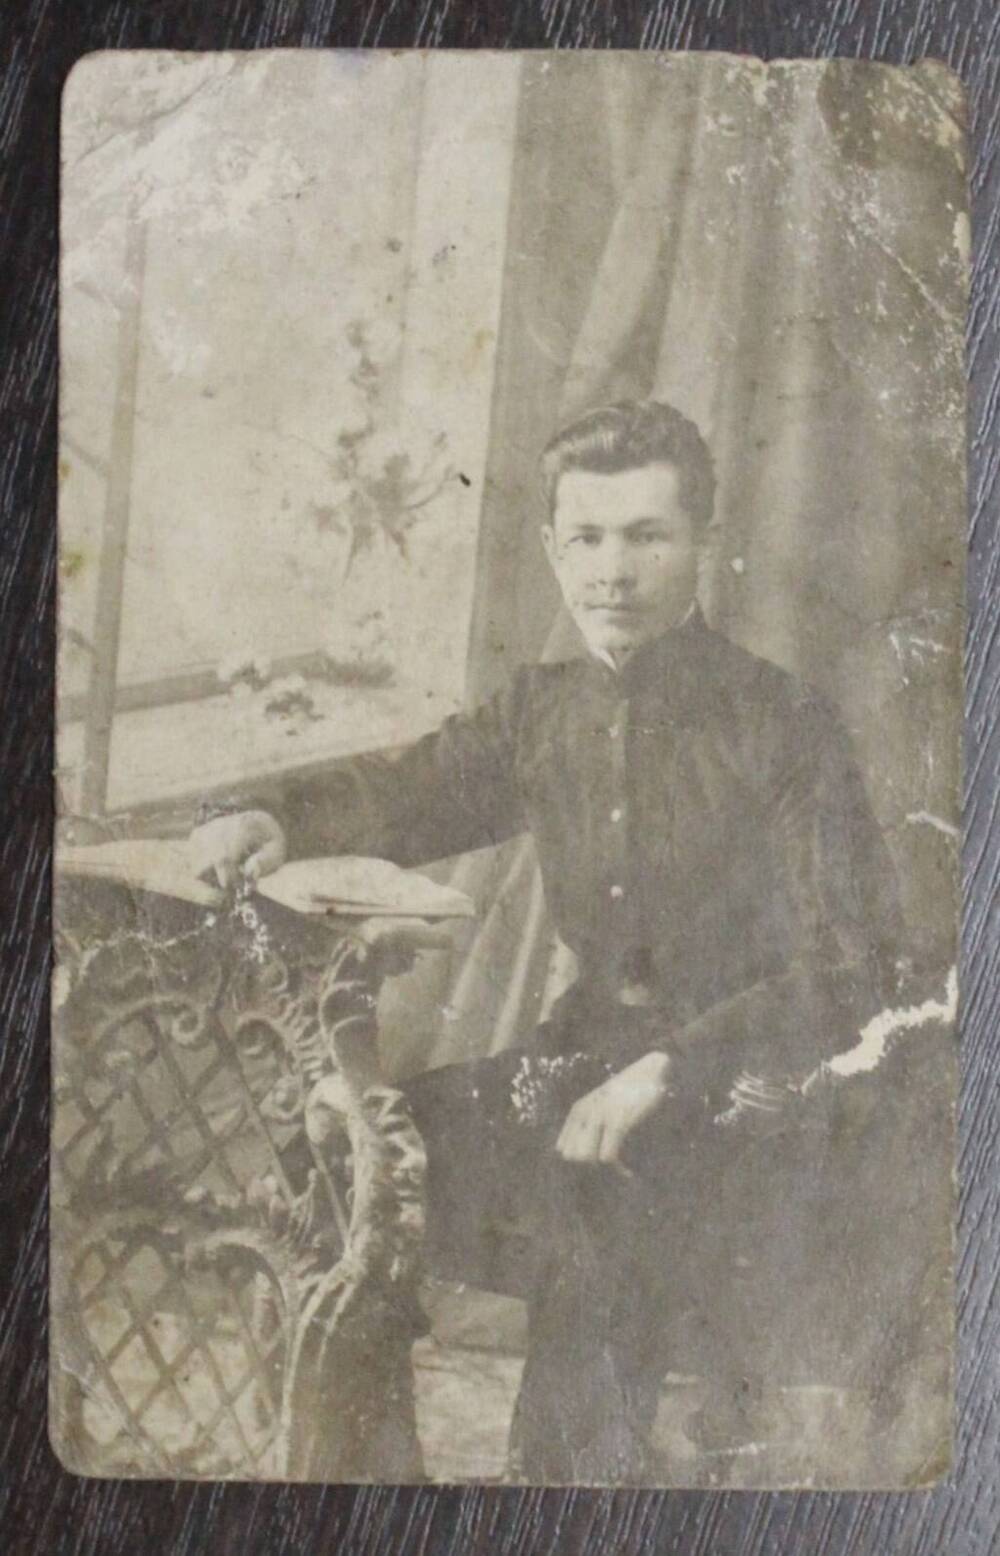 Фотография с изображением мужчины, сидящего у окна. Предположительно начало 20 века.